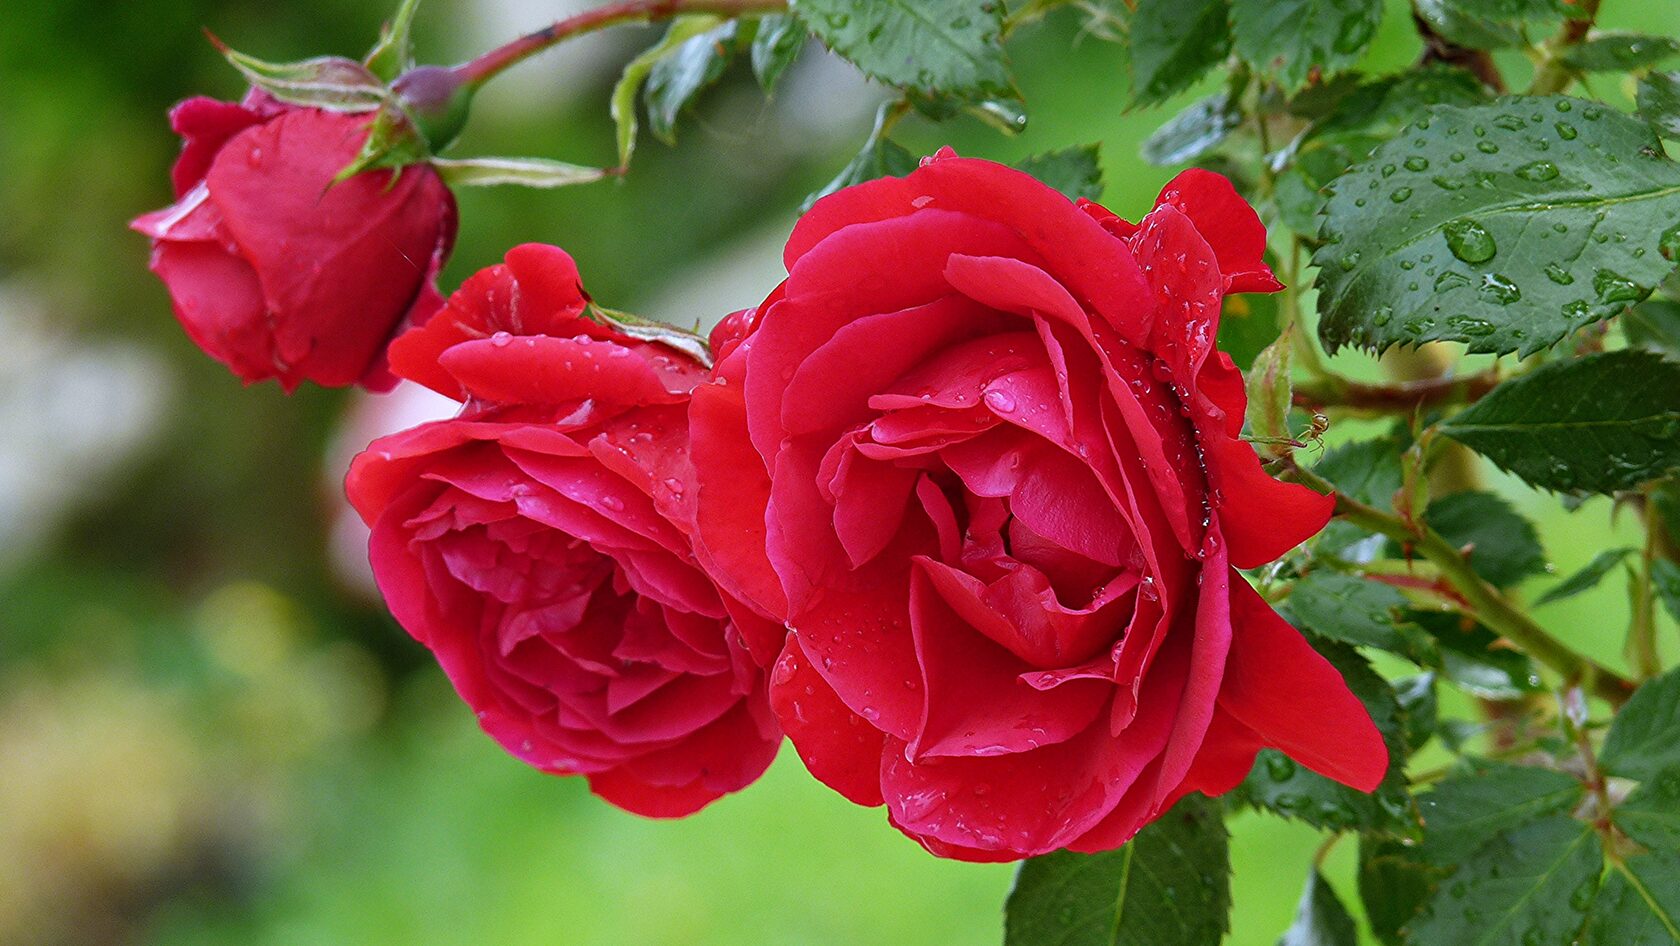 Представляем вашему вниманию 15+ любопытных фактов о розах, о которых многие могут не знать.